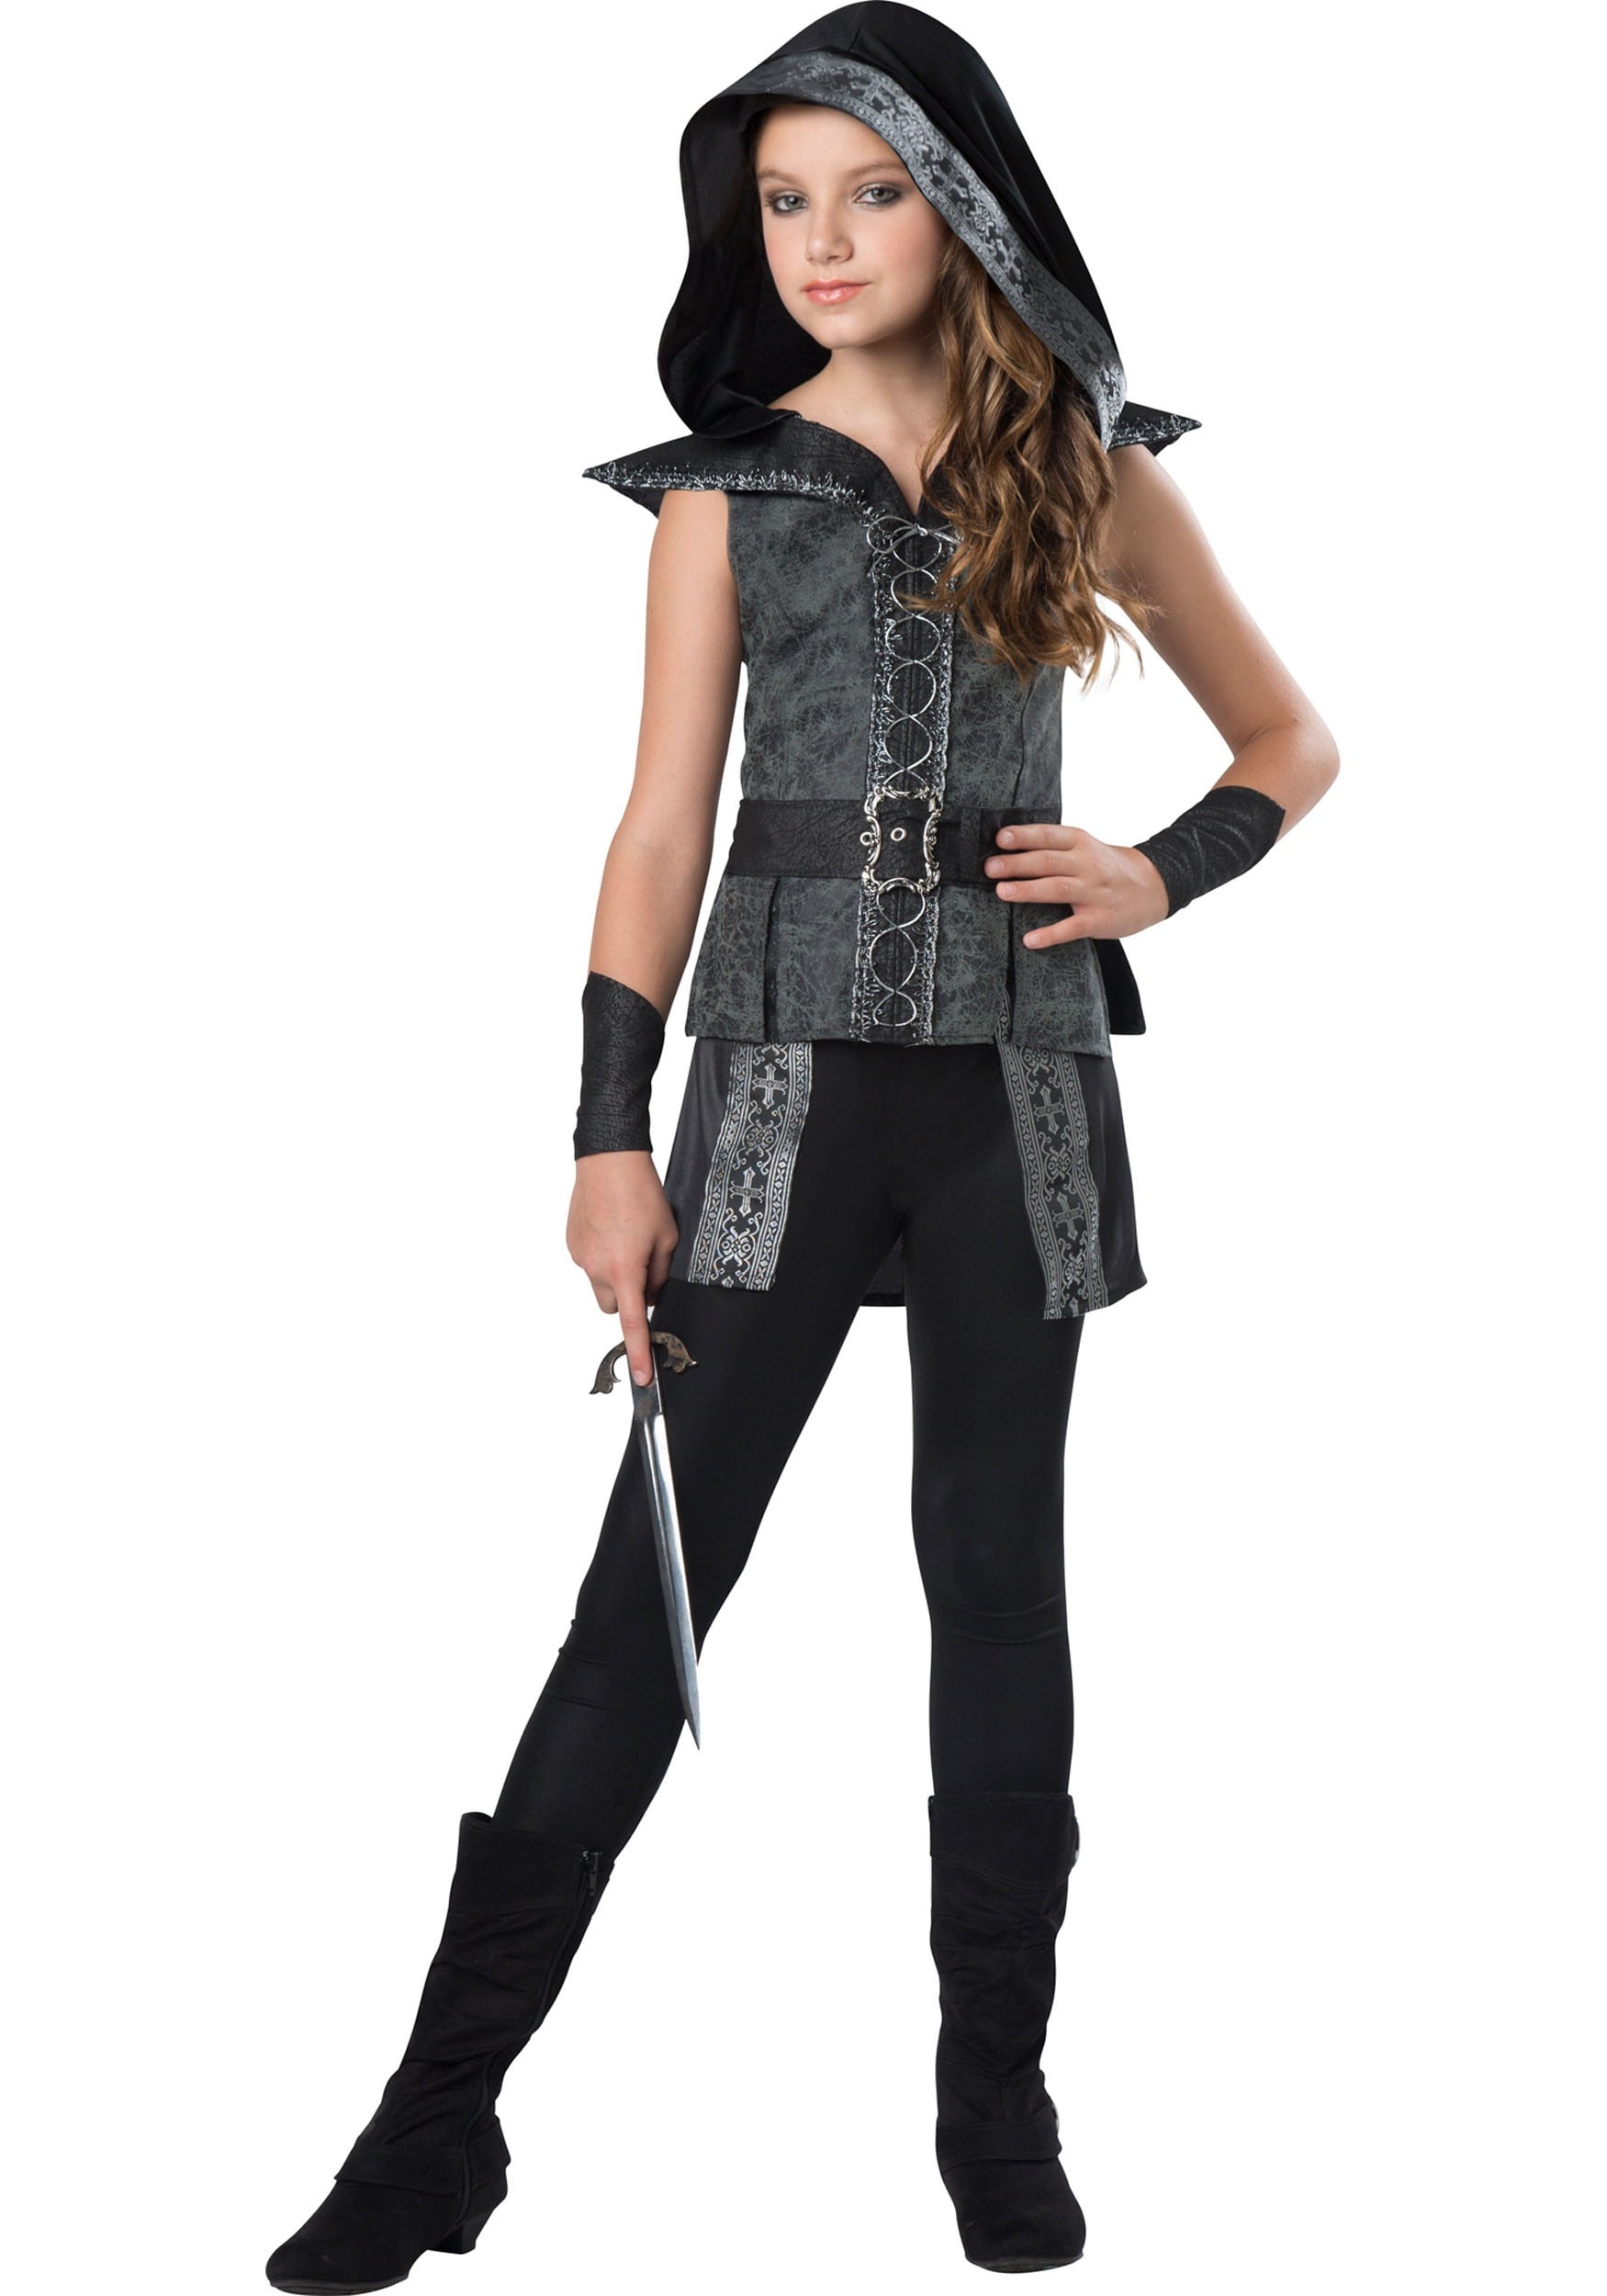 Girls Tween Dark Woods Huntress Costume - Walmart.com - Walmart.com